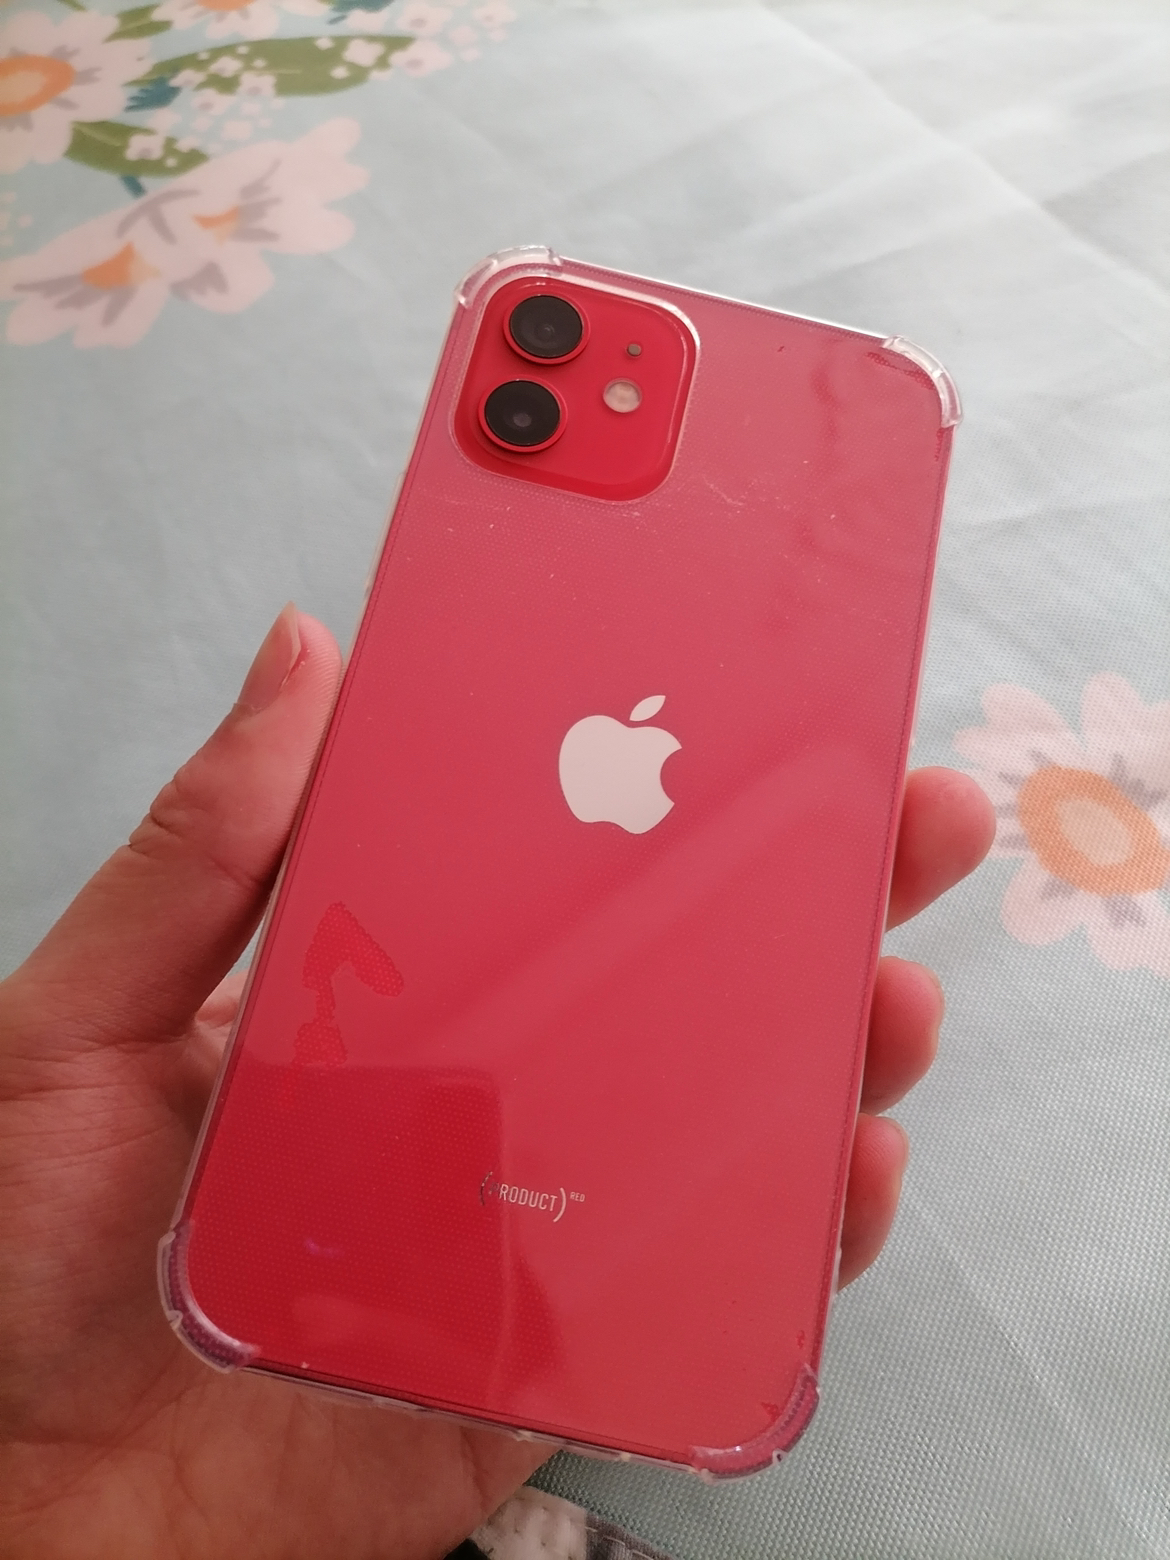 【全新原装正品】apple 苹果 iphone 12 64g 红色 移动联通电信5g全